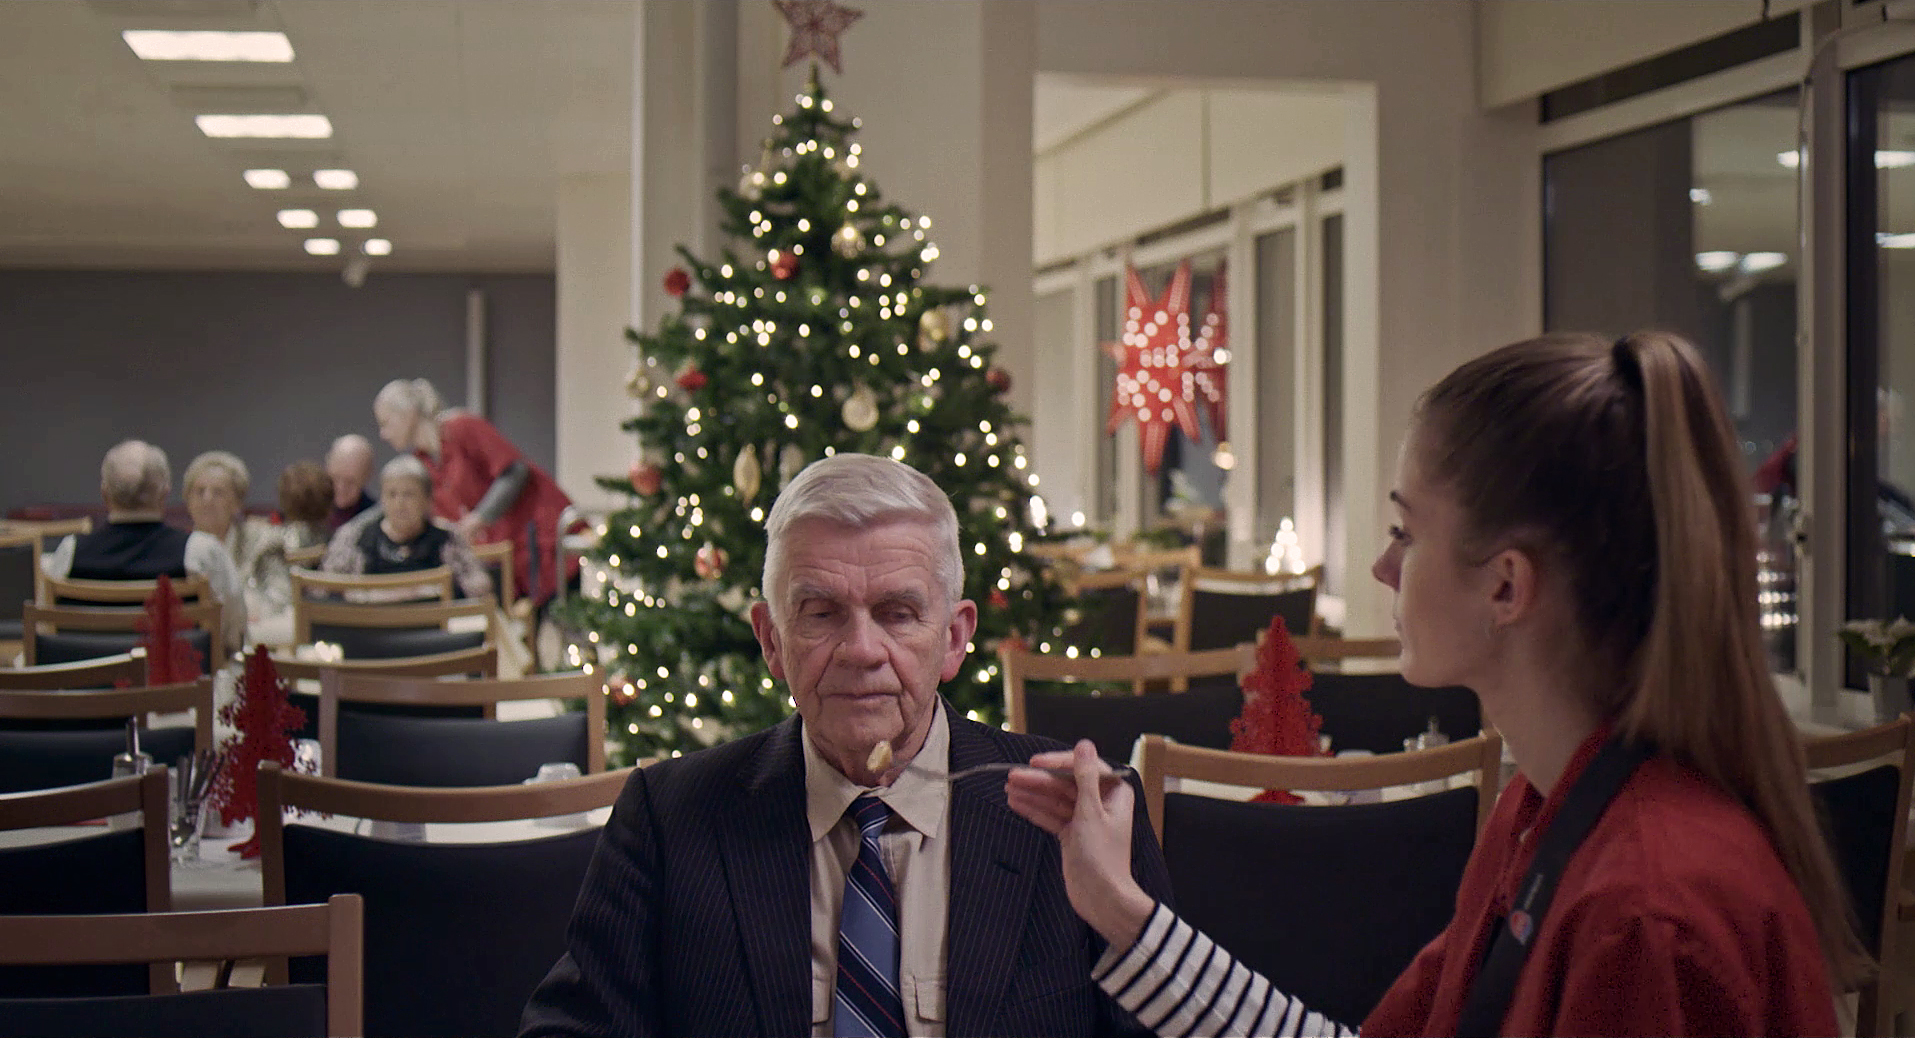 Echo: Auf dem Bild ist ein Mann im Anzug, der von einer jüngeren Frau gefüttert wird. Im Hintergrund steht ein geschmückter Weihnachtsbaum, viele Stühle und mehrere ältere Menschen sitzen an Tischen